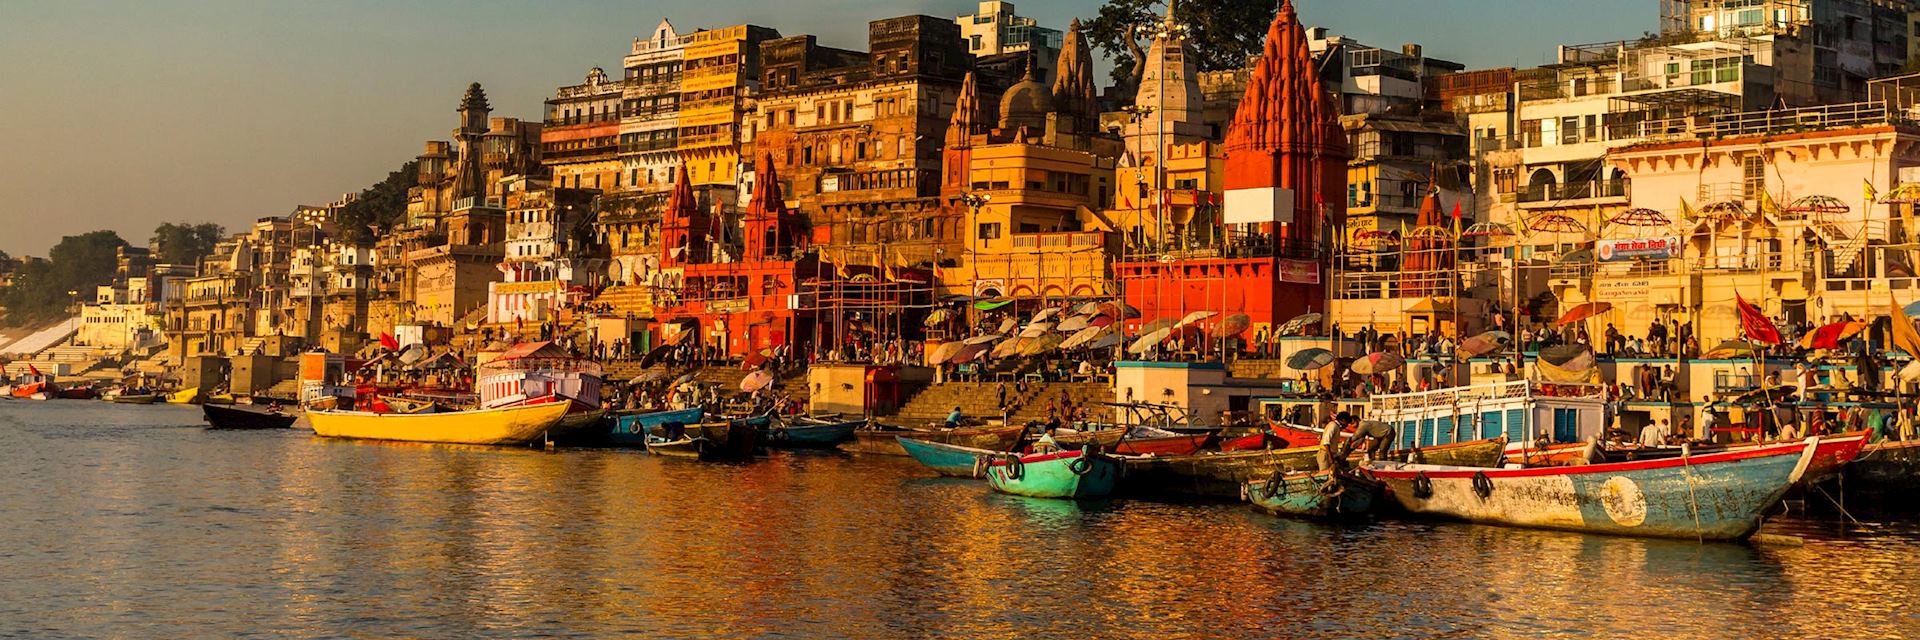 The holy city of Varanasi, India